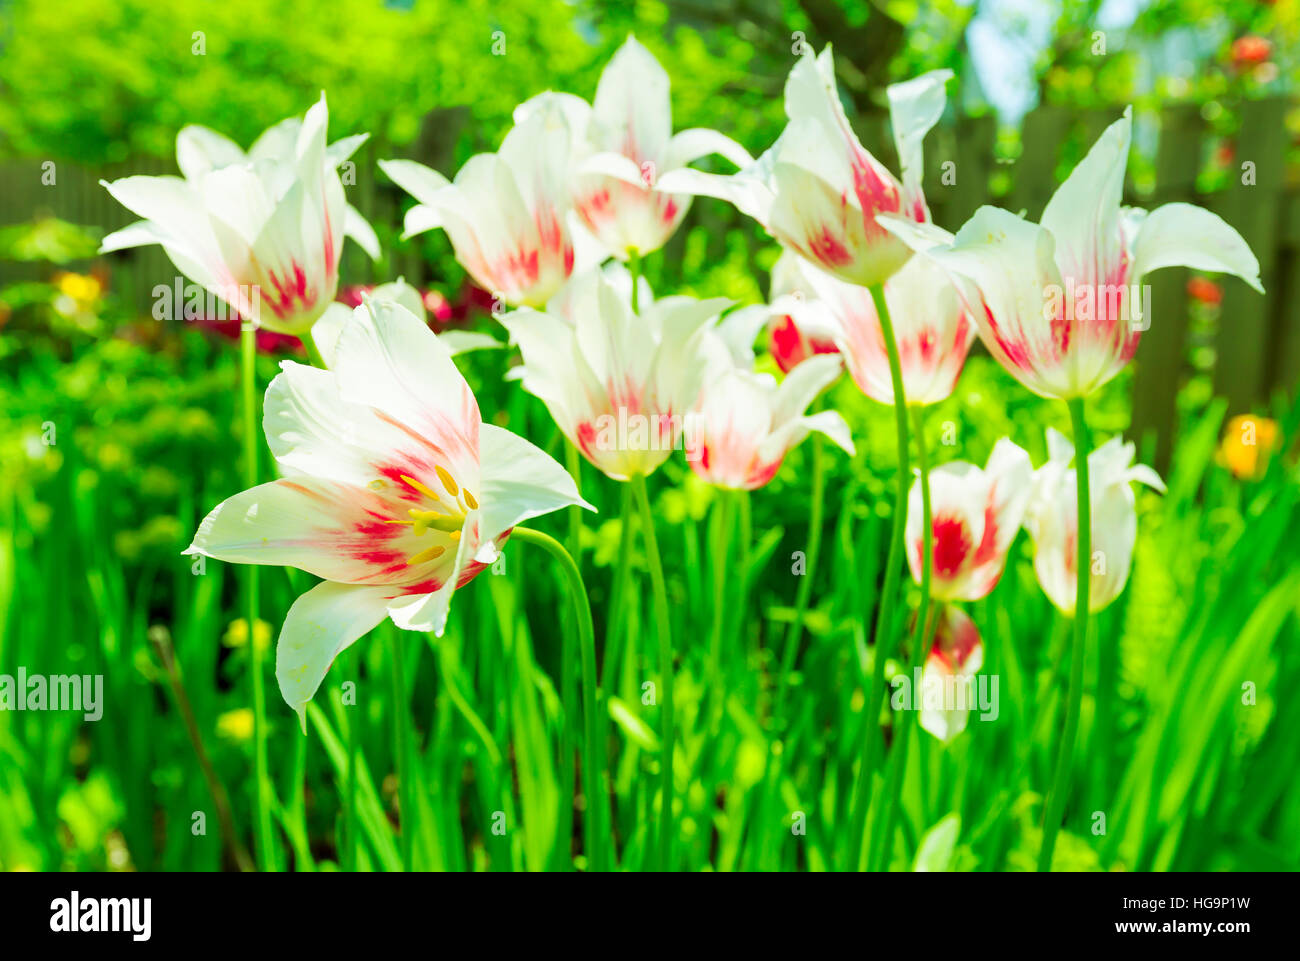 Dynamische Hintergrundbeleuchtung Lilie blühenden Tulpen im Frühlingsgarten inspiriert durch die Farbe des Jahres 2017, grün Stockfoto